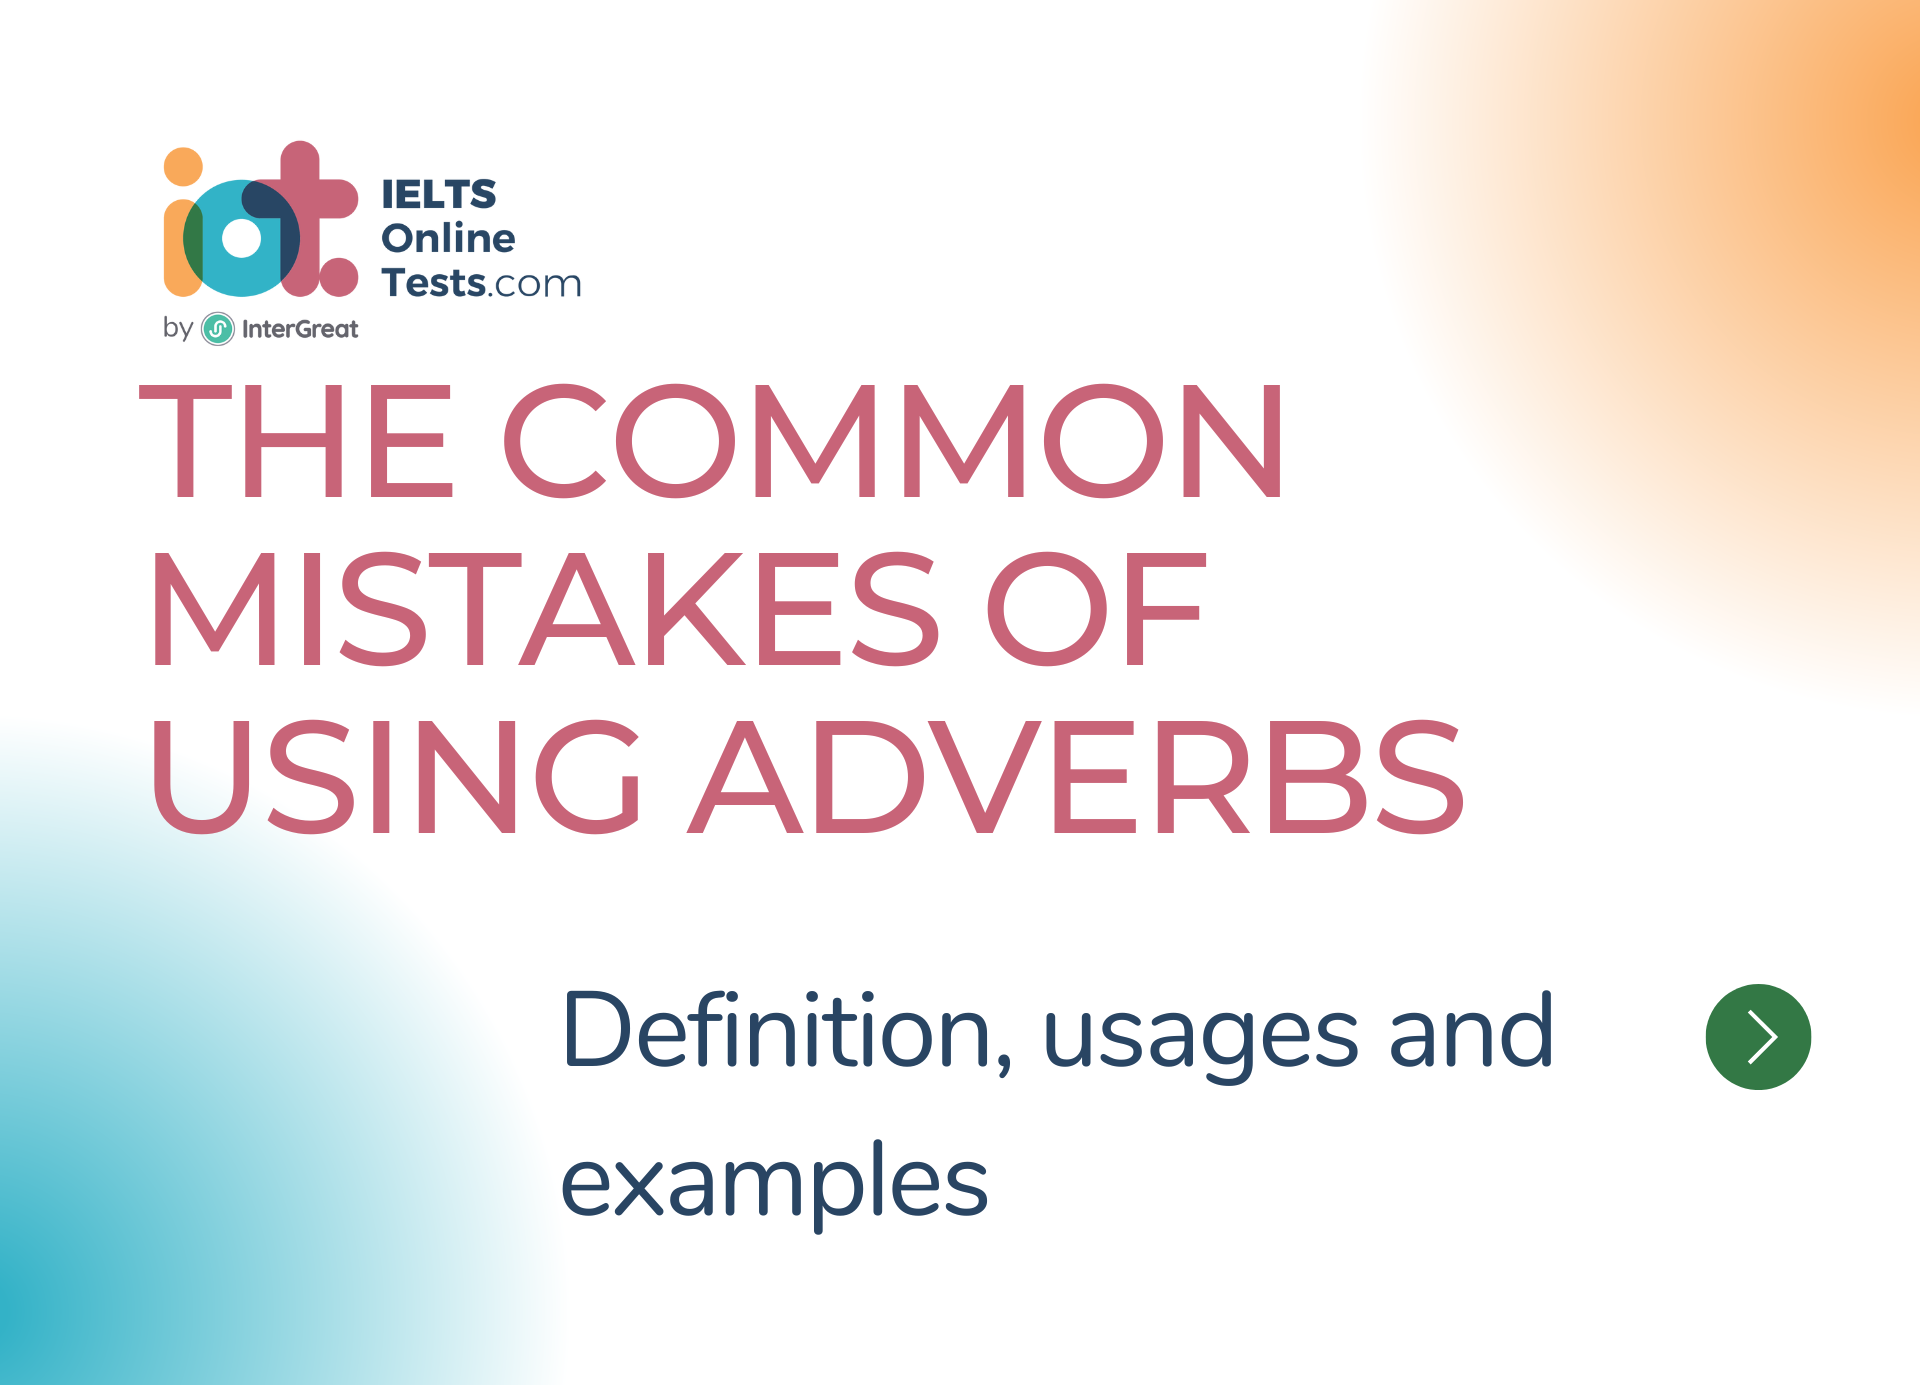 Một số lỗi phổ biến khi sử dụng trạng từ và cách tránh xa chúng (The common mistakes of using adverbs)